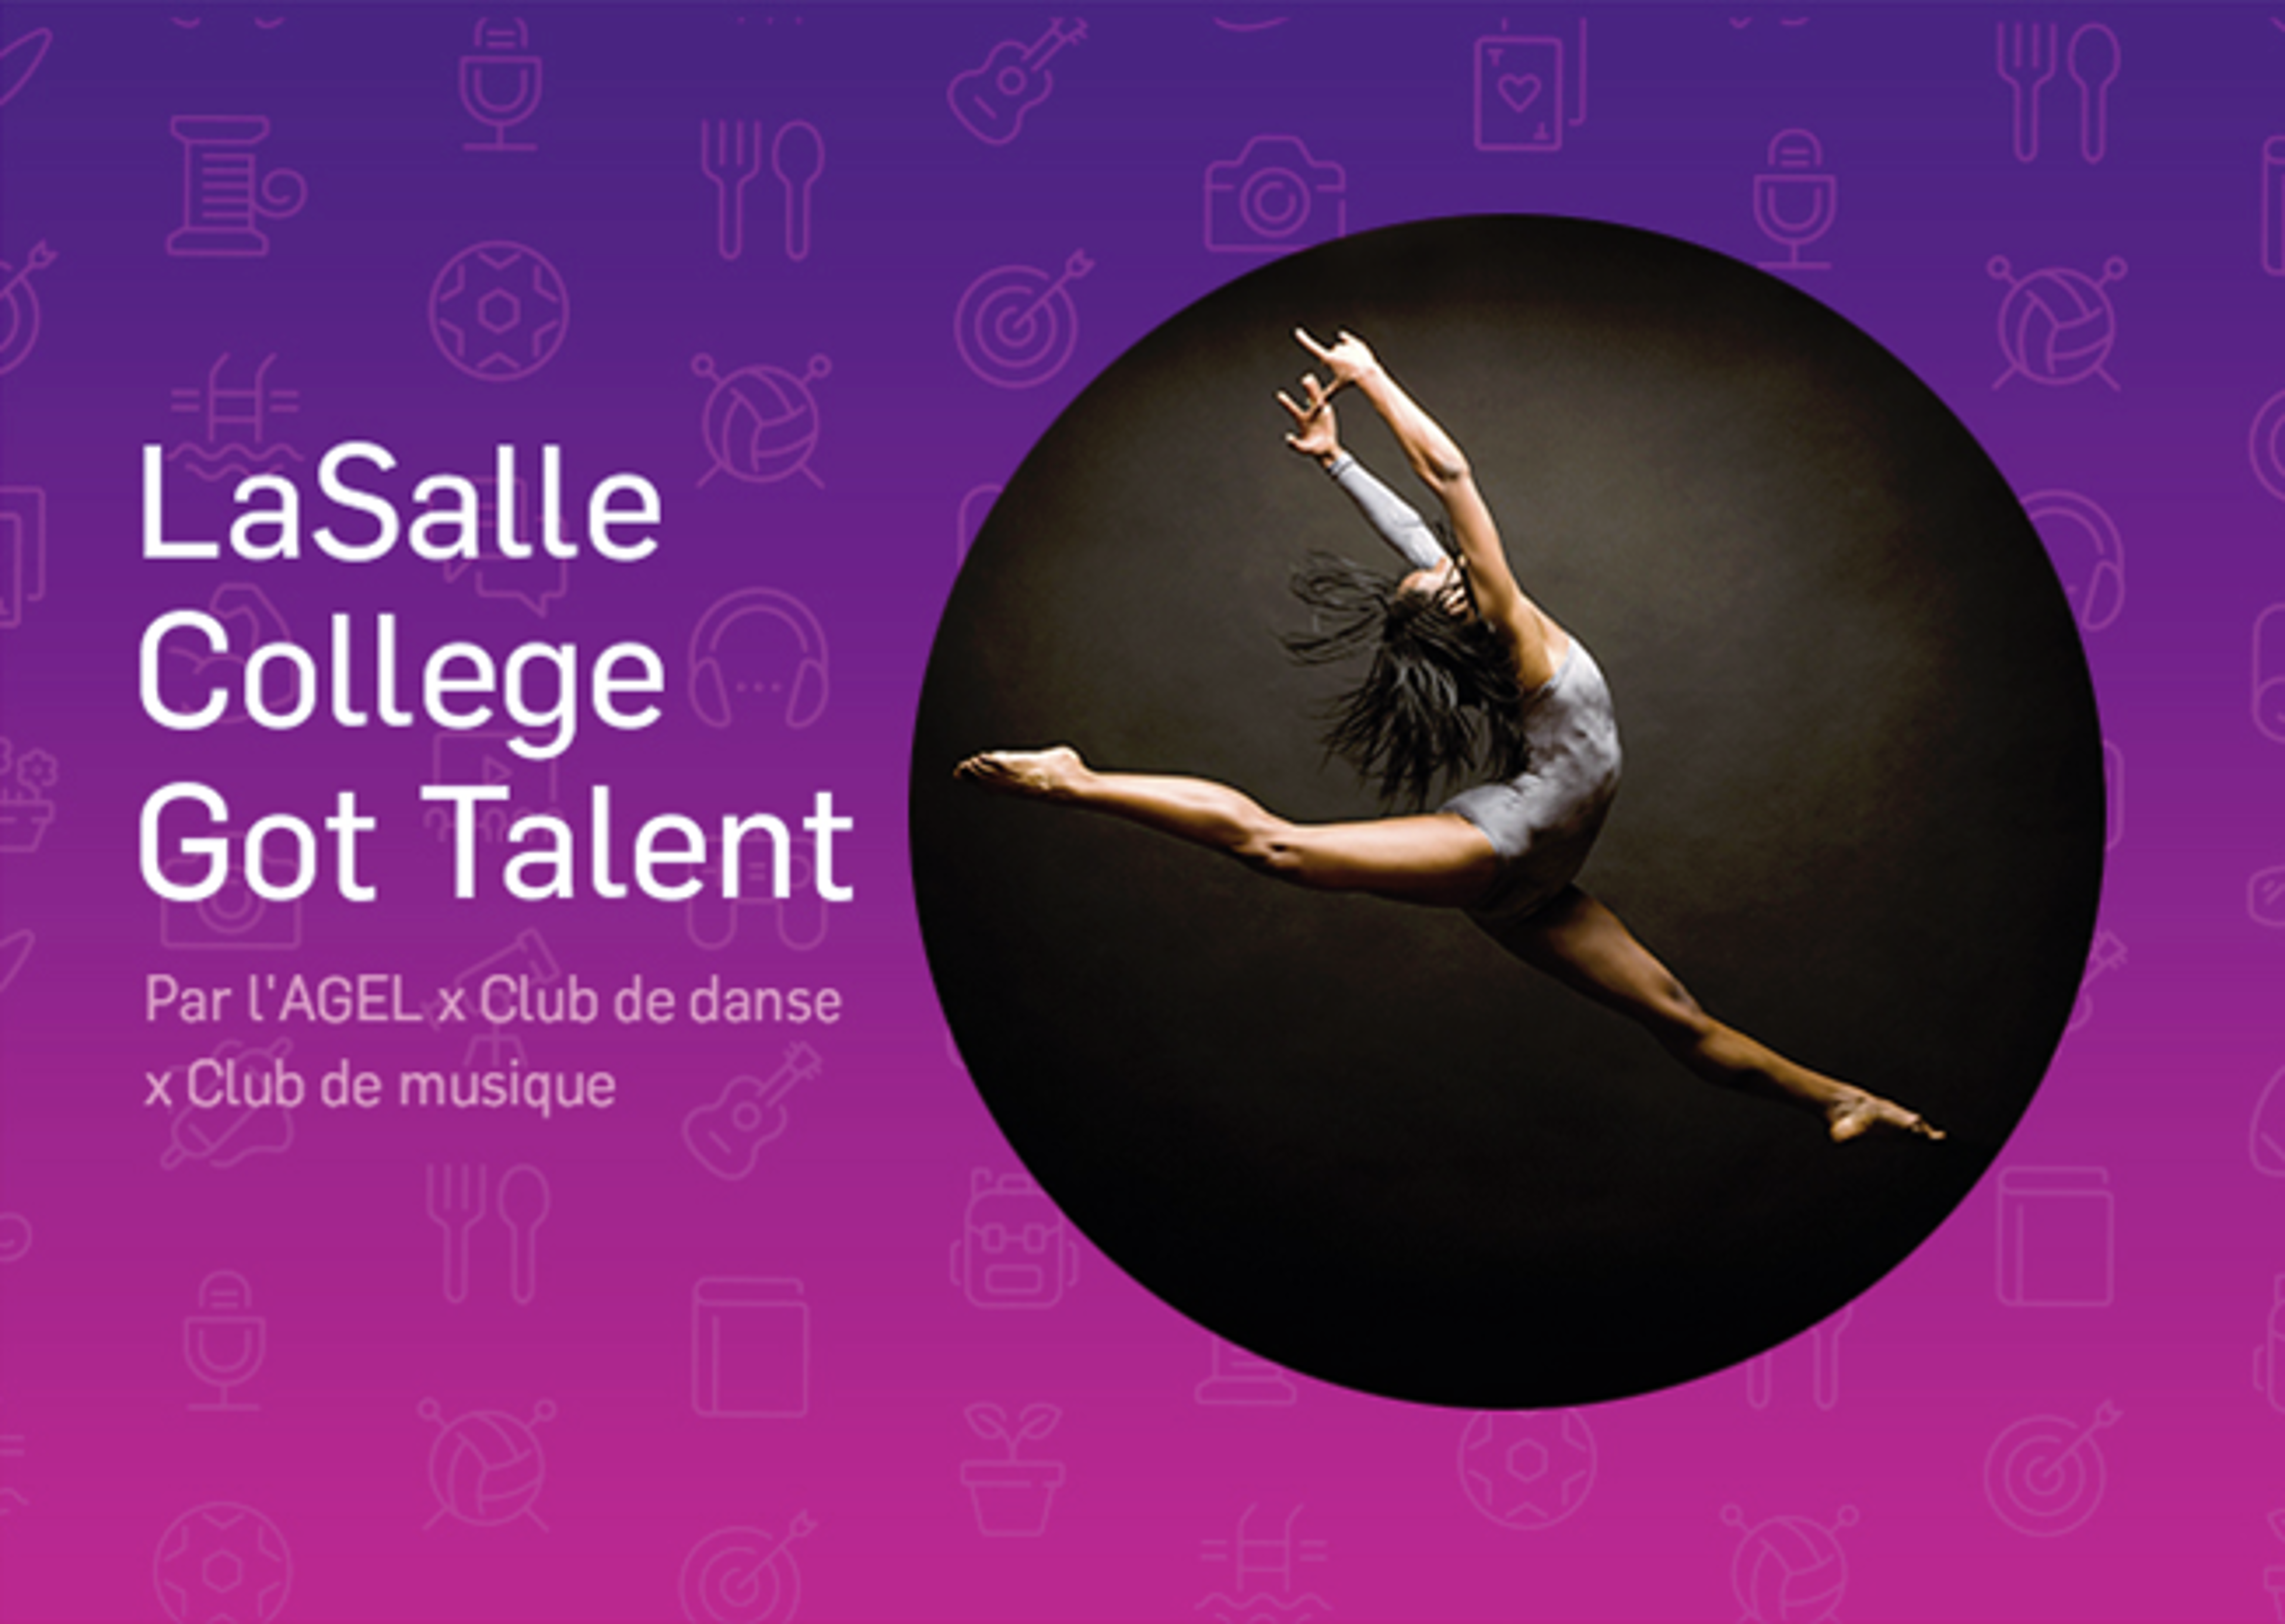 Danseuse dynamique en plein saut sur fond sombre, annonçant l'événement de talents du Collège LaSalle avec un thème violet éclatant.